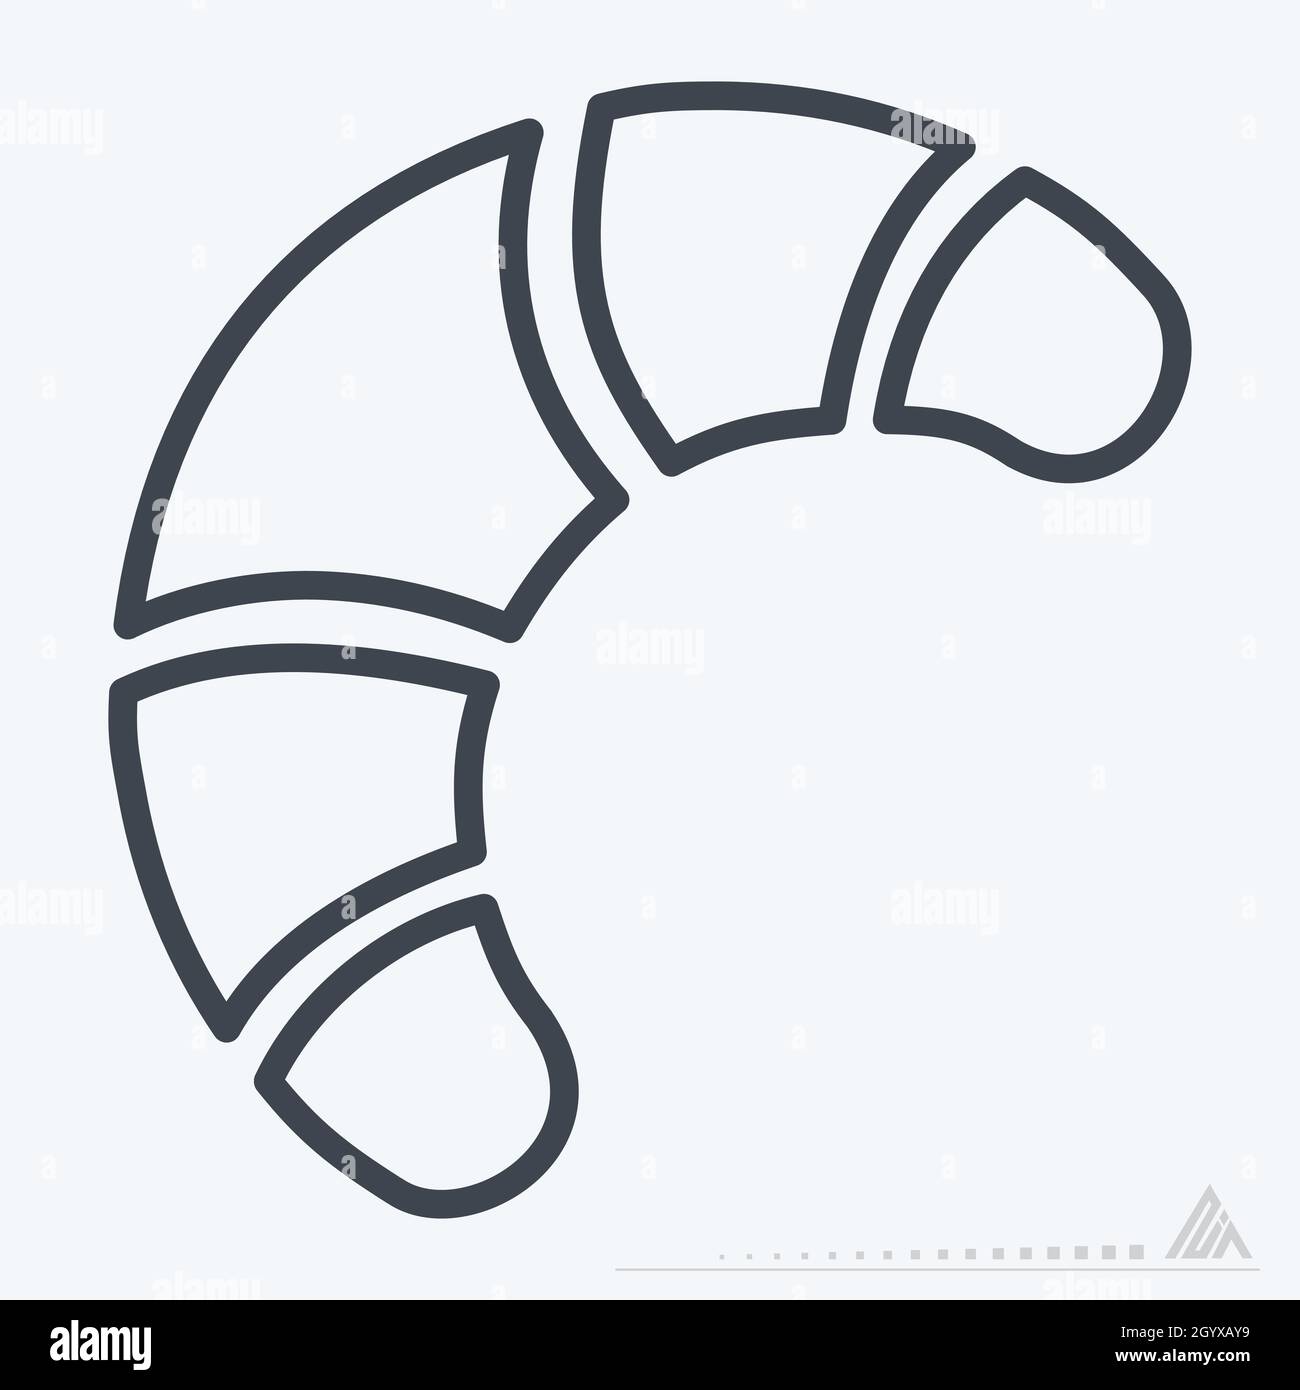 Icona Croissant - stile linea - illustrazione semplice, tratto modificabile, vettore modello di disegno, buono per stampe, poster, pubblicità, annunci, i Illustrazione Vettoriale